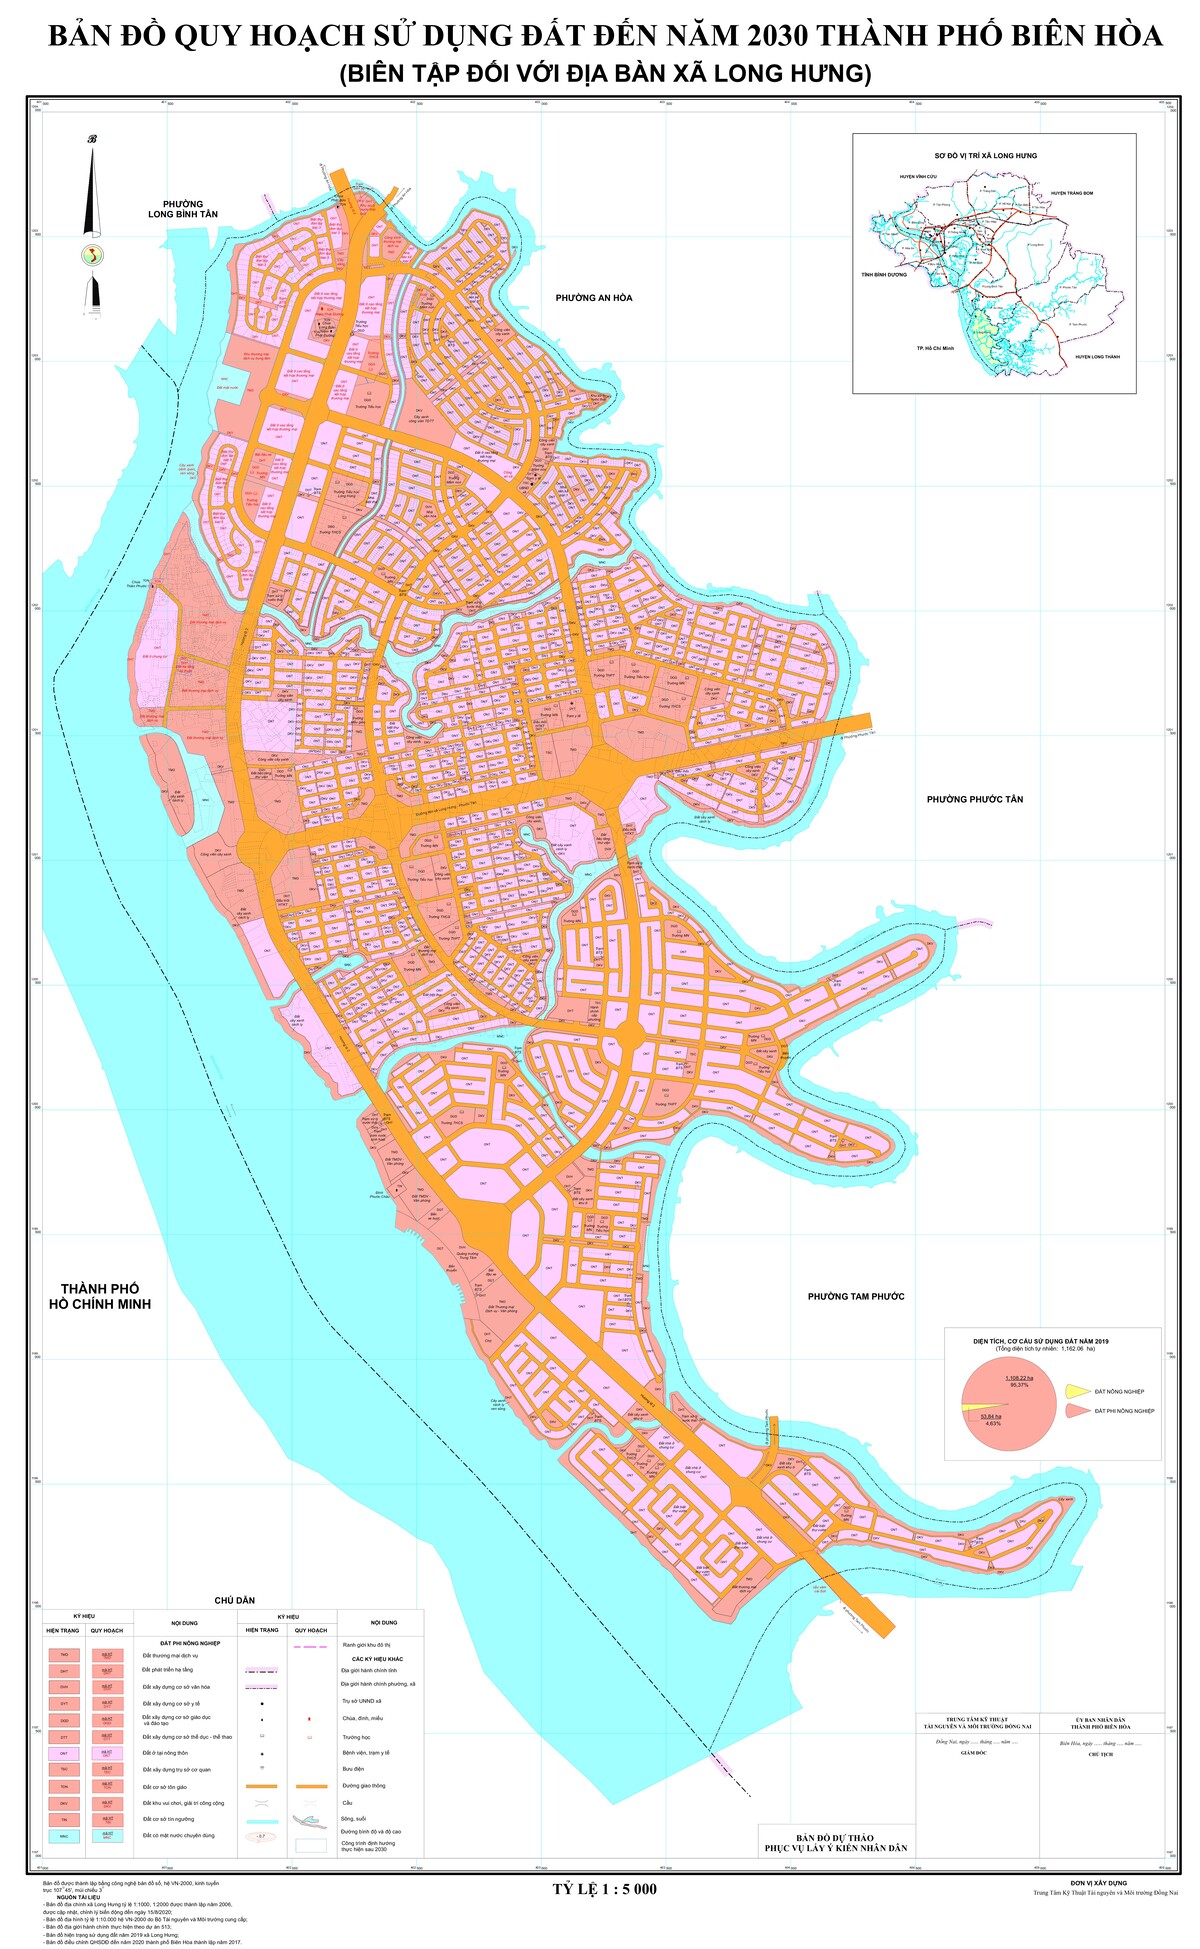 Bản đồ quy hoạch xã Long Hưng, thành phố Biên Hòa, tỉnh Đồng Nai đến năm 2030